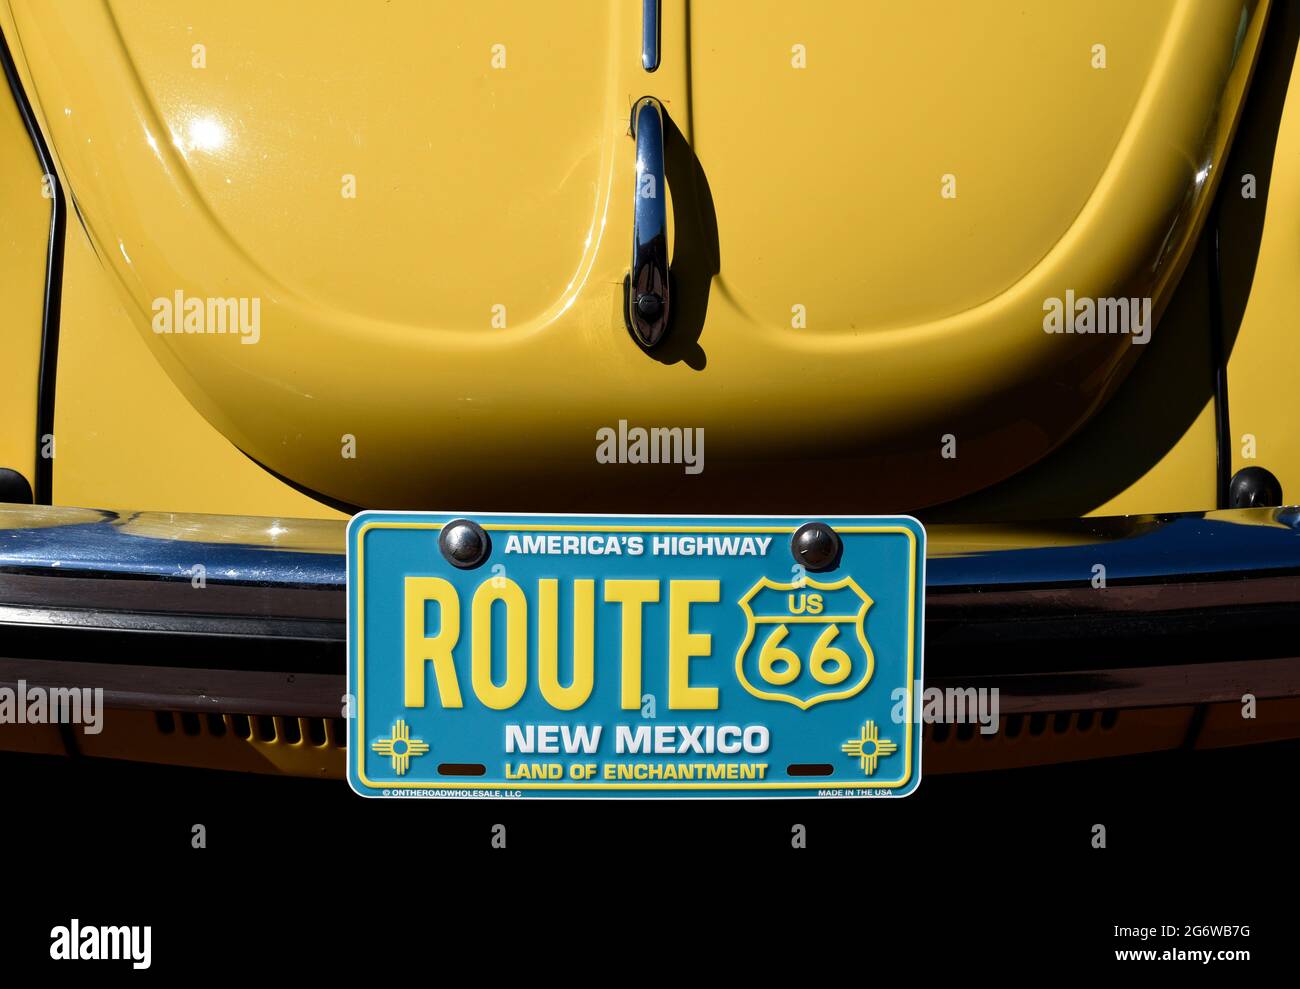 Ein dekoratives Nummernschild der Route 66 auf einem klassischen Volkswagen, das auf einer Automobilausstellung in Santa Fe, New Mexico, ausgestellt ist. Stockfoto